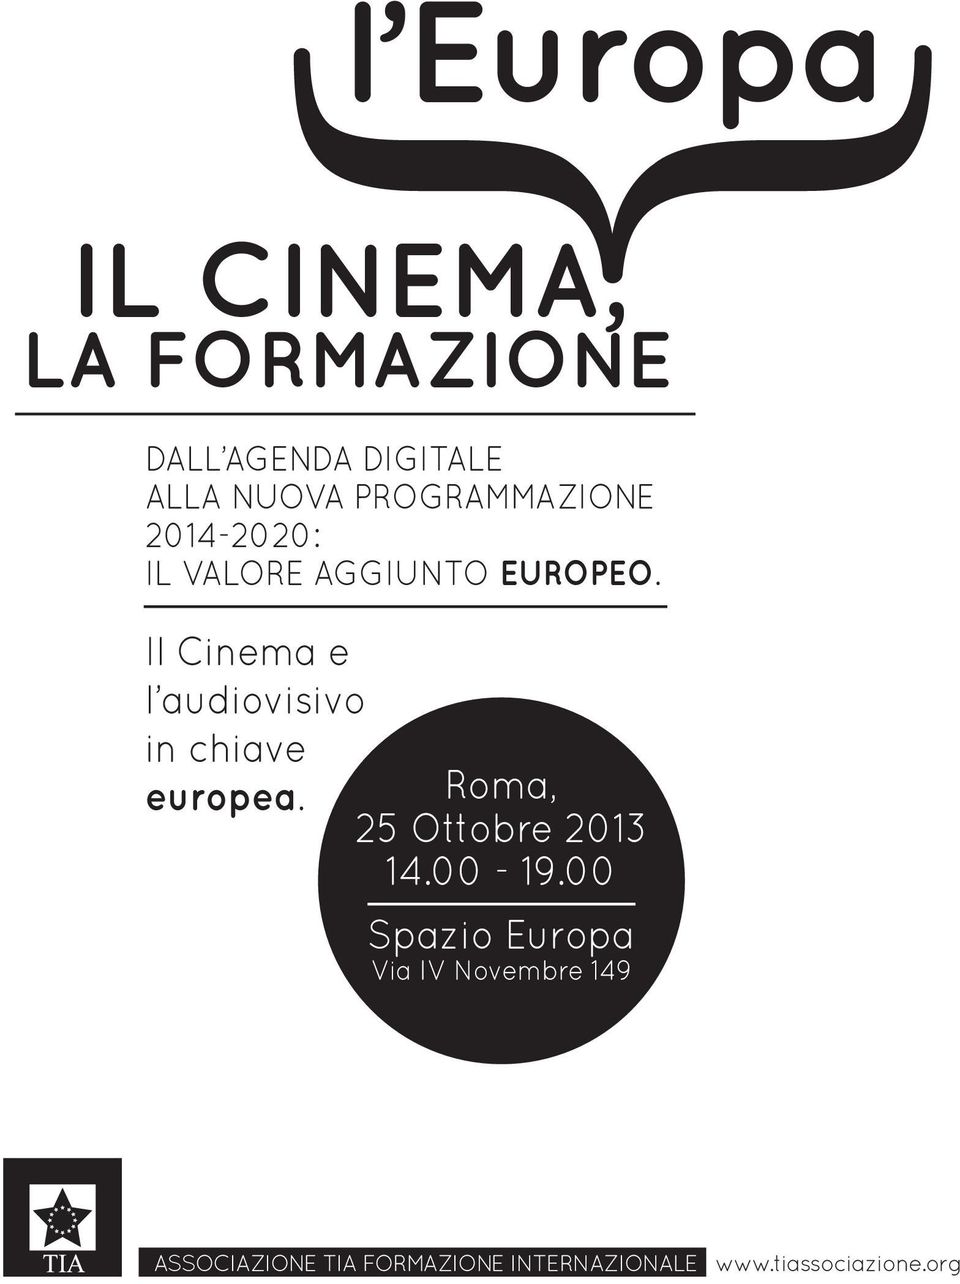 Il Cinema e l audiovisivo in chiave Roma, europea. 25 Ottobre 2013 14.